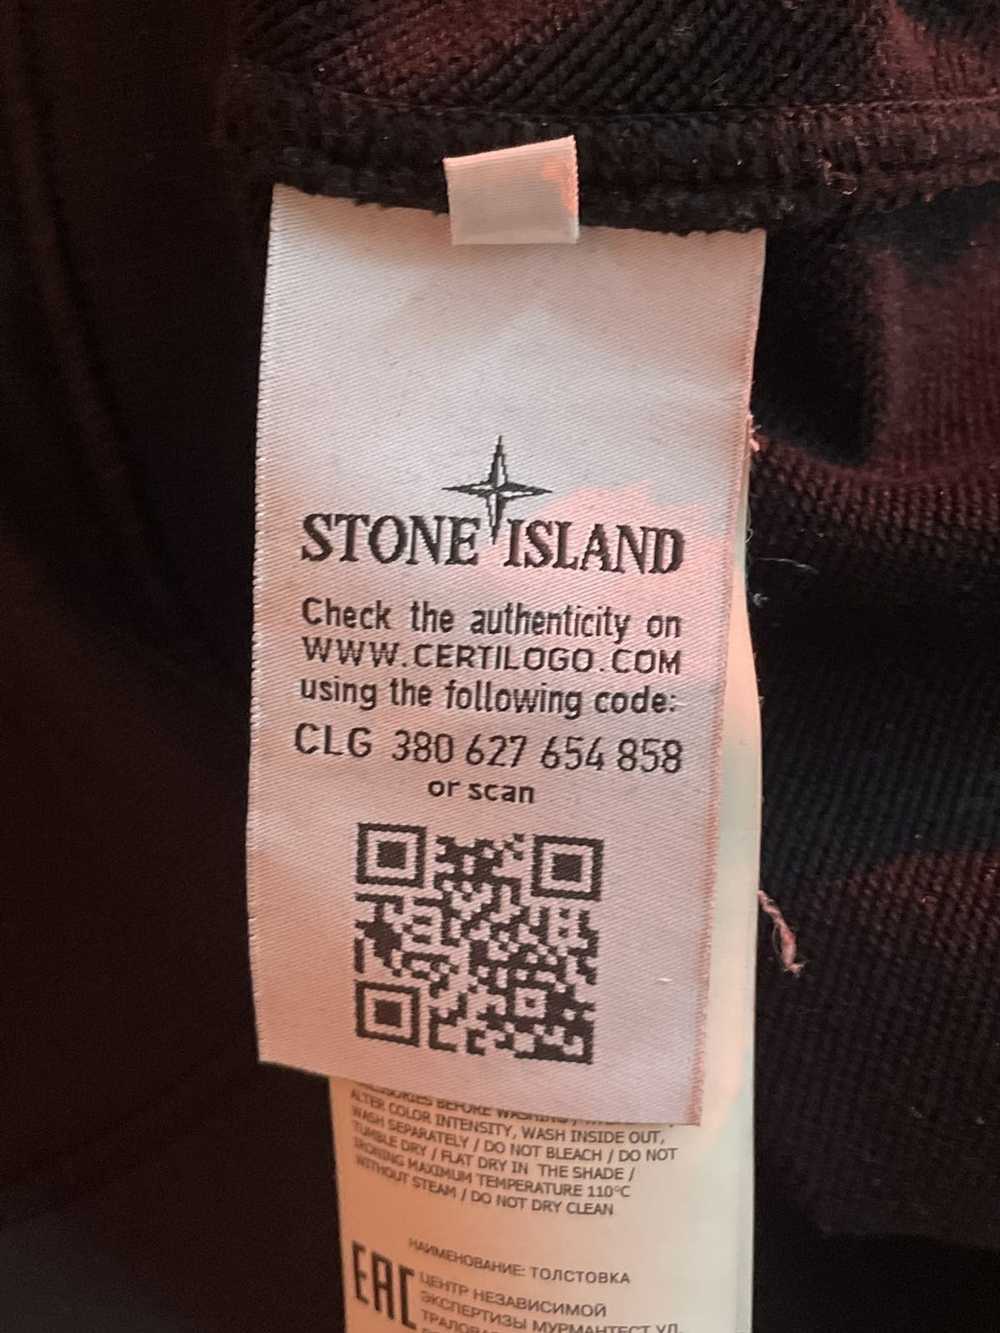 Stone Island stone island sweatshirt size M - image 4